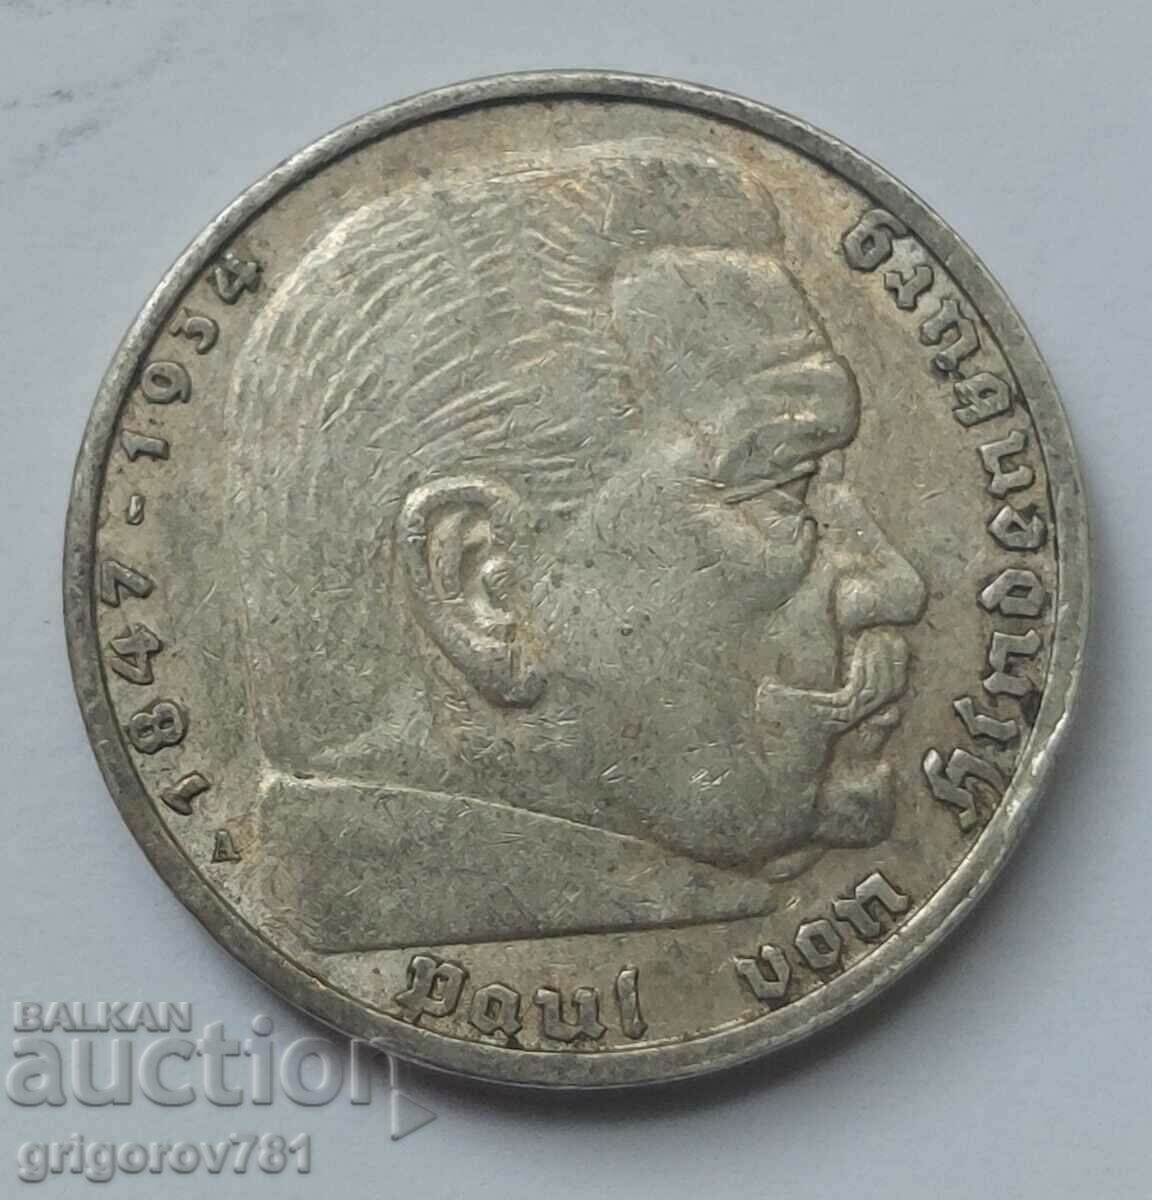 5 Mark Silver Γερμανία 1935 A III Reich Silver Coin #61